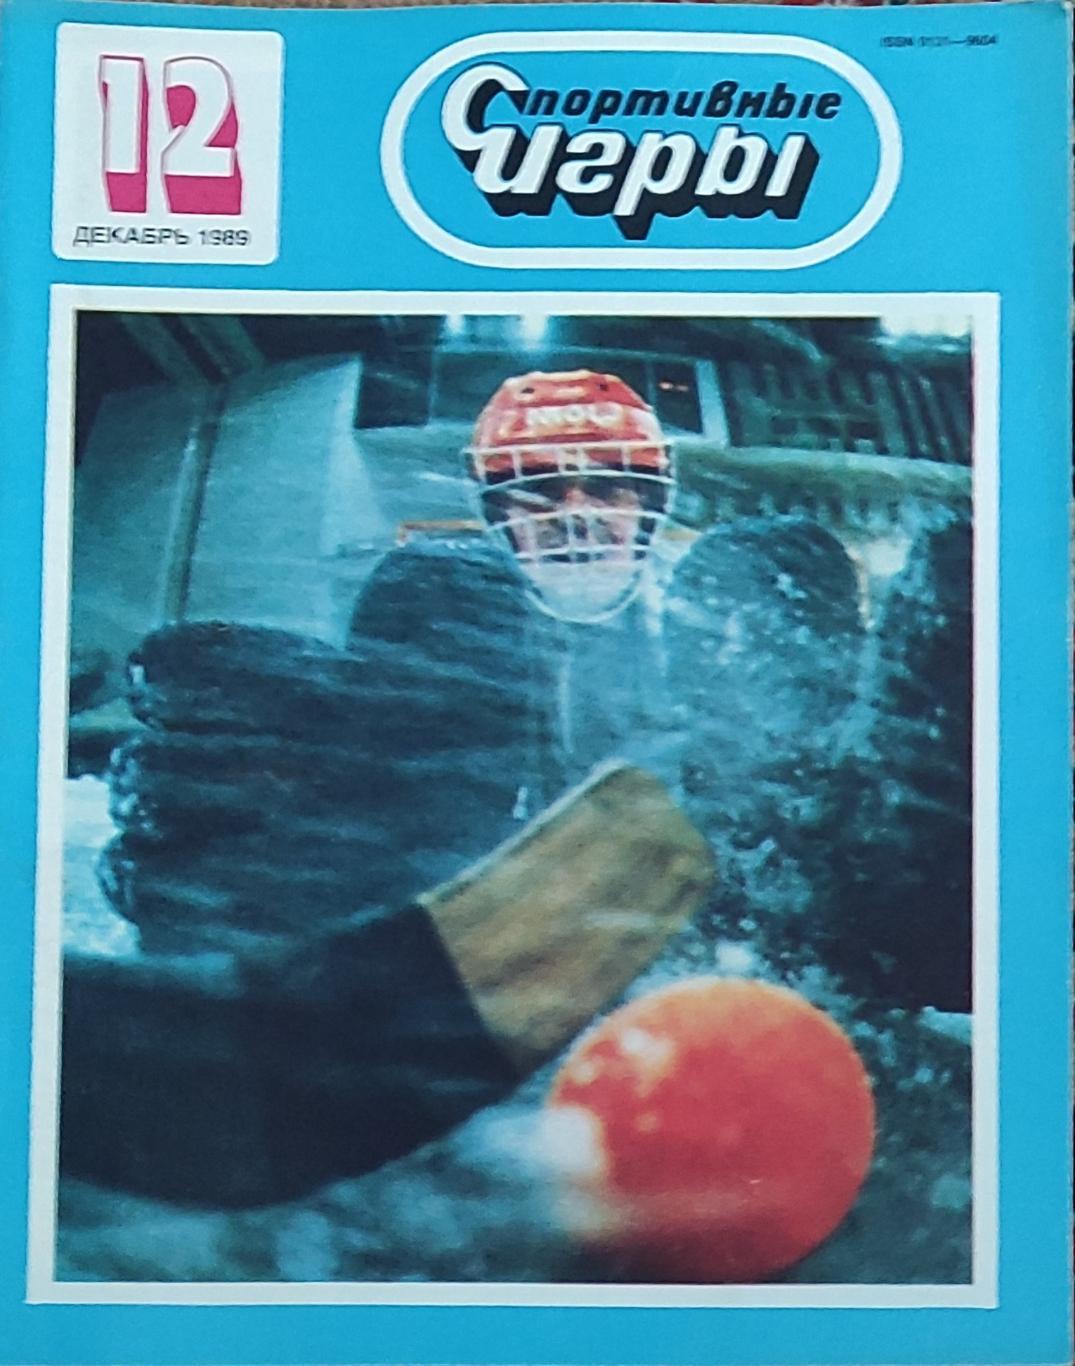 Журнал Спортивные игры 1989 номер 12